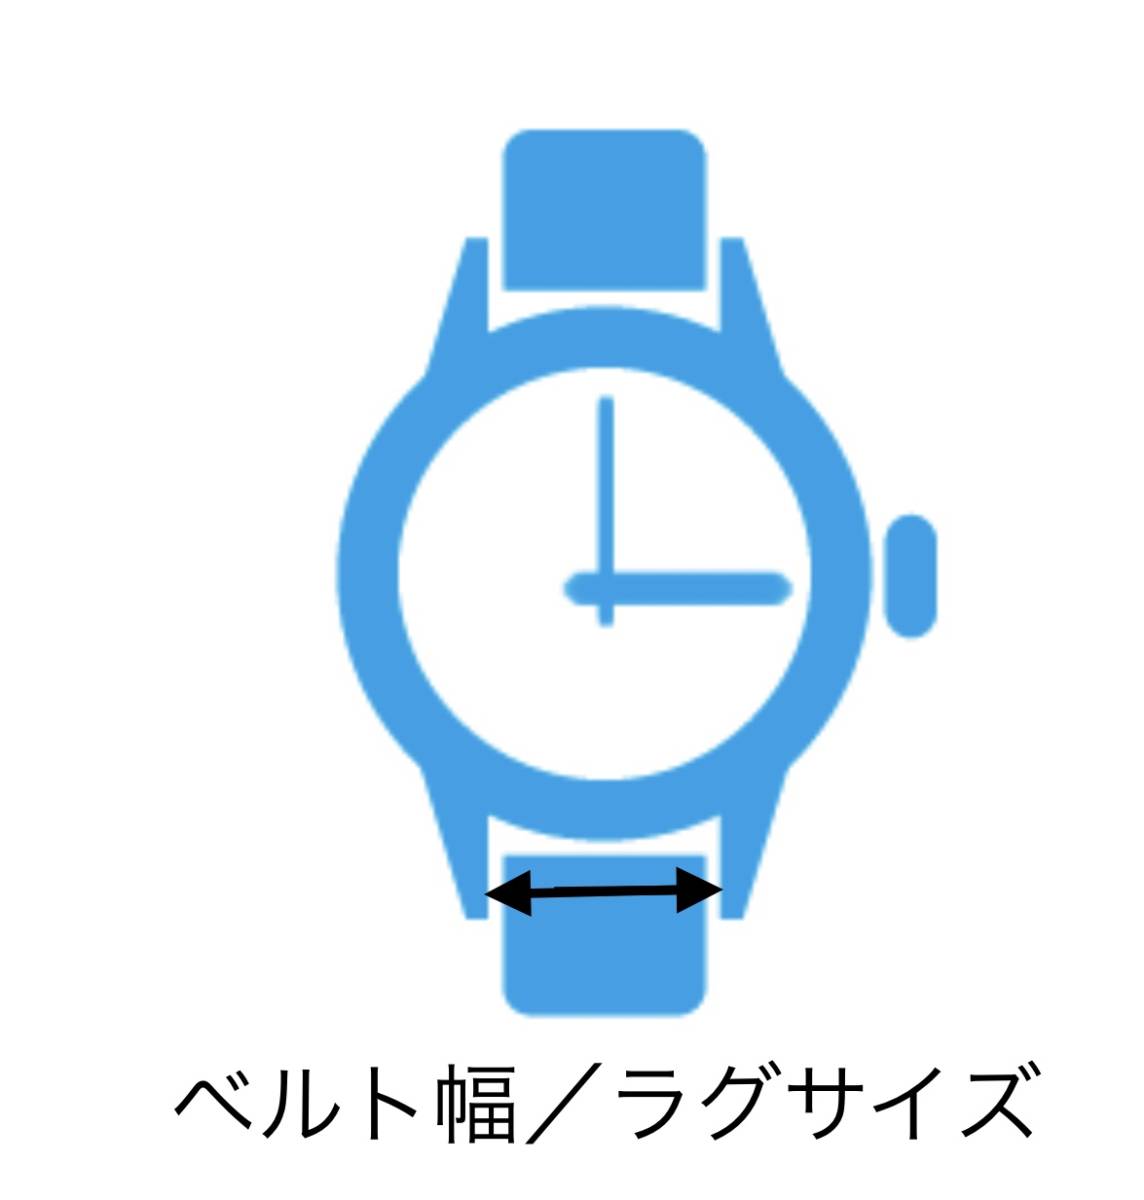  наручные часы spring палка spring палка 2 шт 10mm для 60 иен стоимость доставки 63 иен быстрое решение немедленная отправка изображение 3 листов y